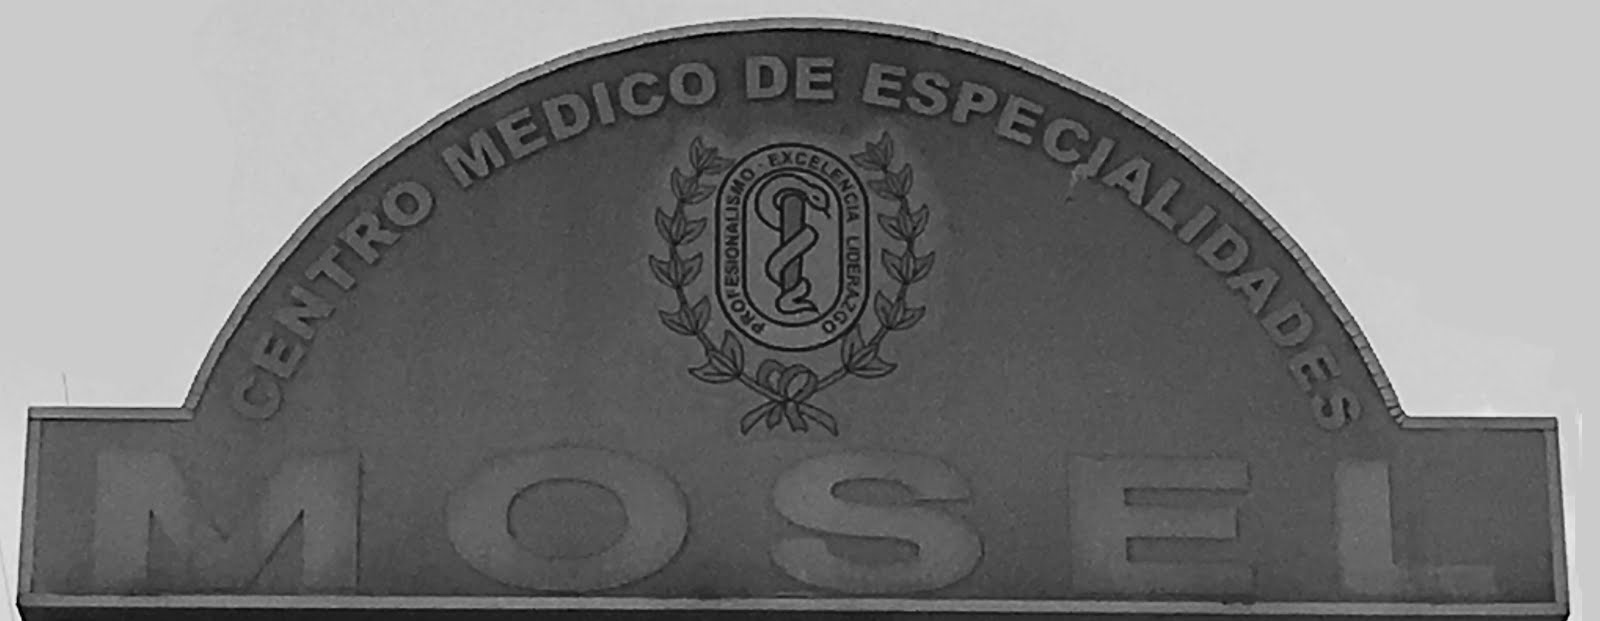 Centro Medico de Especialidades MOSEL